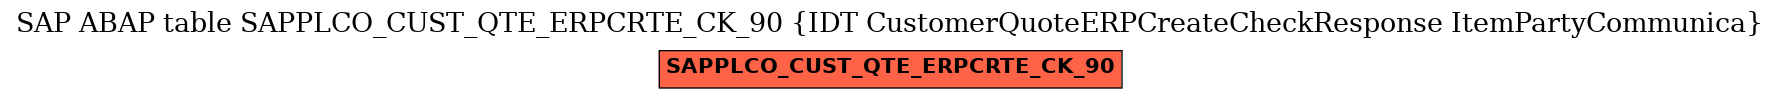 E-R Diagram for table SAPPLCO_CUST_QTE_ERPCRTE_CK_90 (IDT CustomerQuoteERPCreateCheckResponse ItemPartyCommunica)